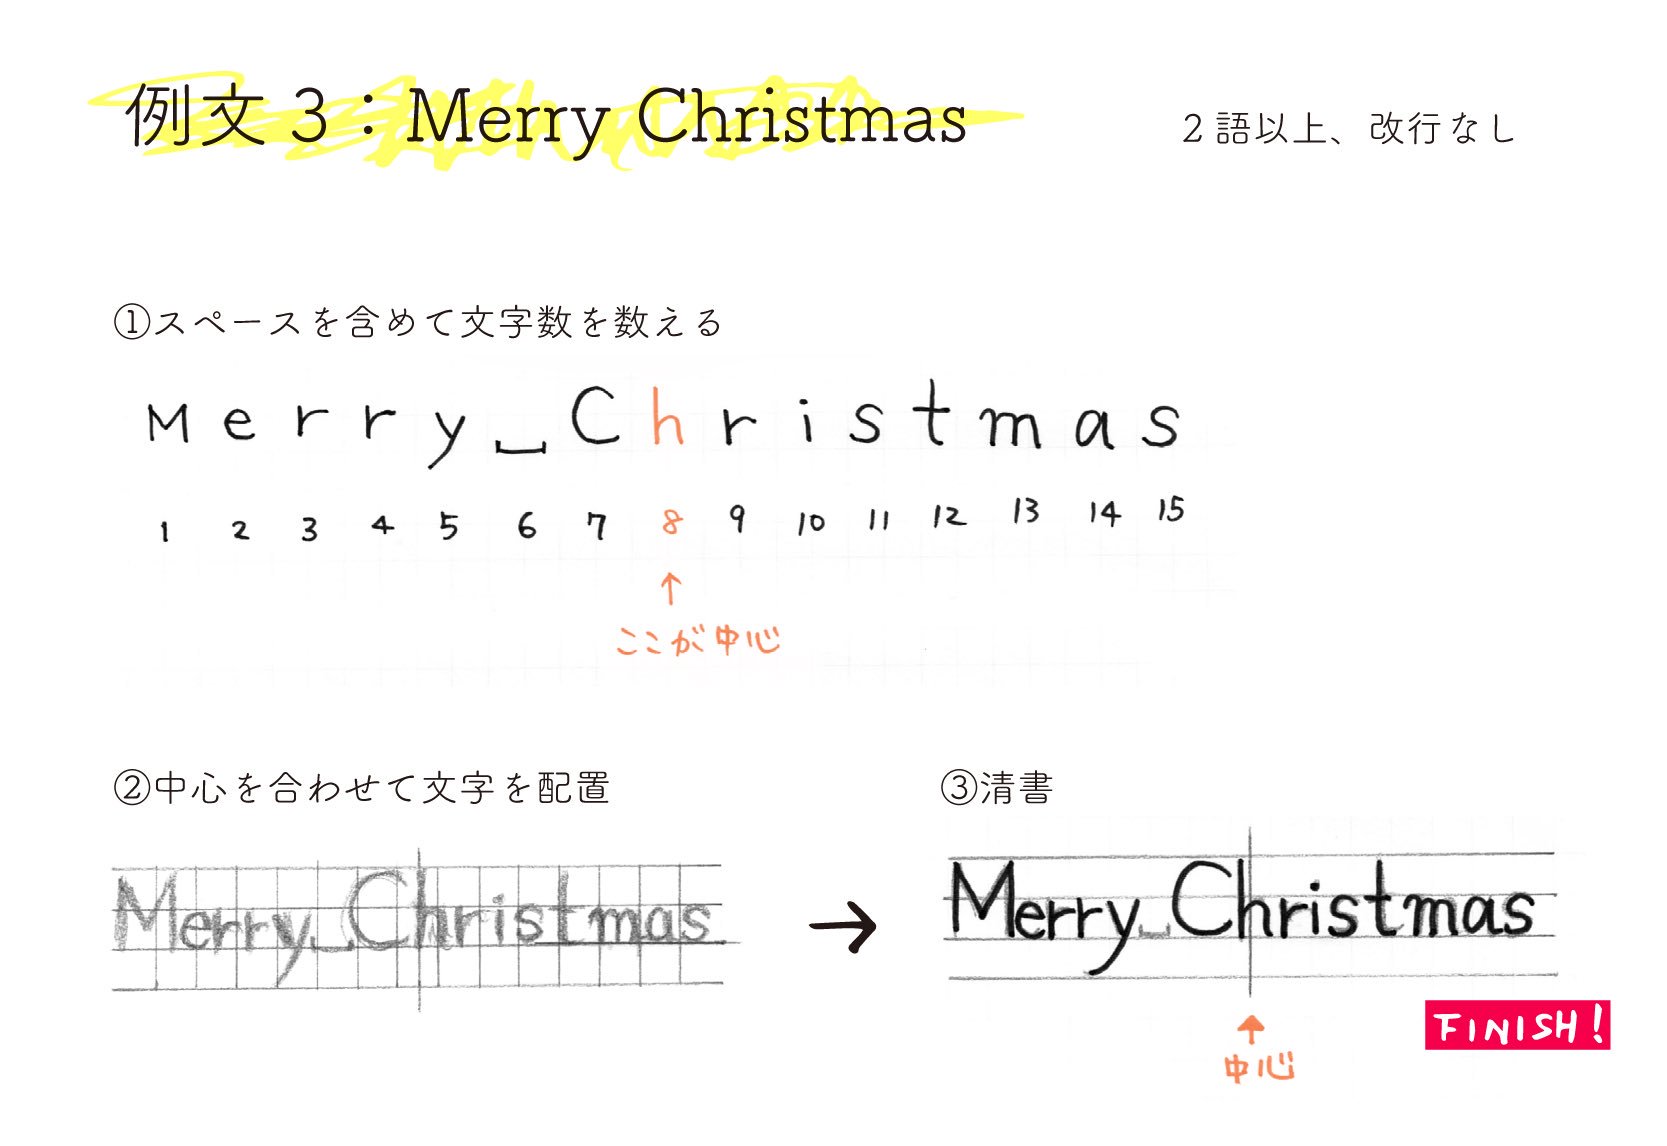 ナツメミオ あわい 間 いよいよクリスマスが近づいてきましたね 手書き文字や 簡単な季節のイラストの描き方を こちらで記事にして頂いております よろしければご覧ください 応用編 可愛い文字の書き方講座 イラスト付き 手作りメッセージカード